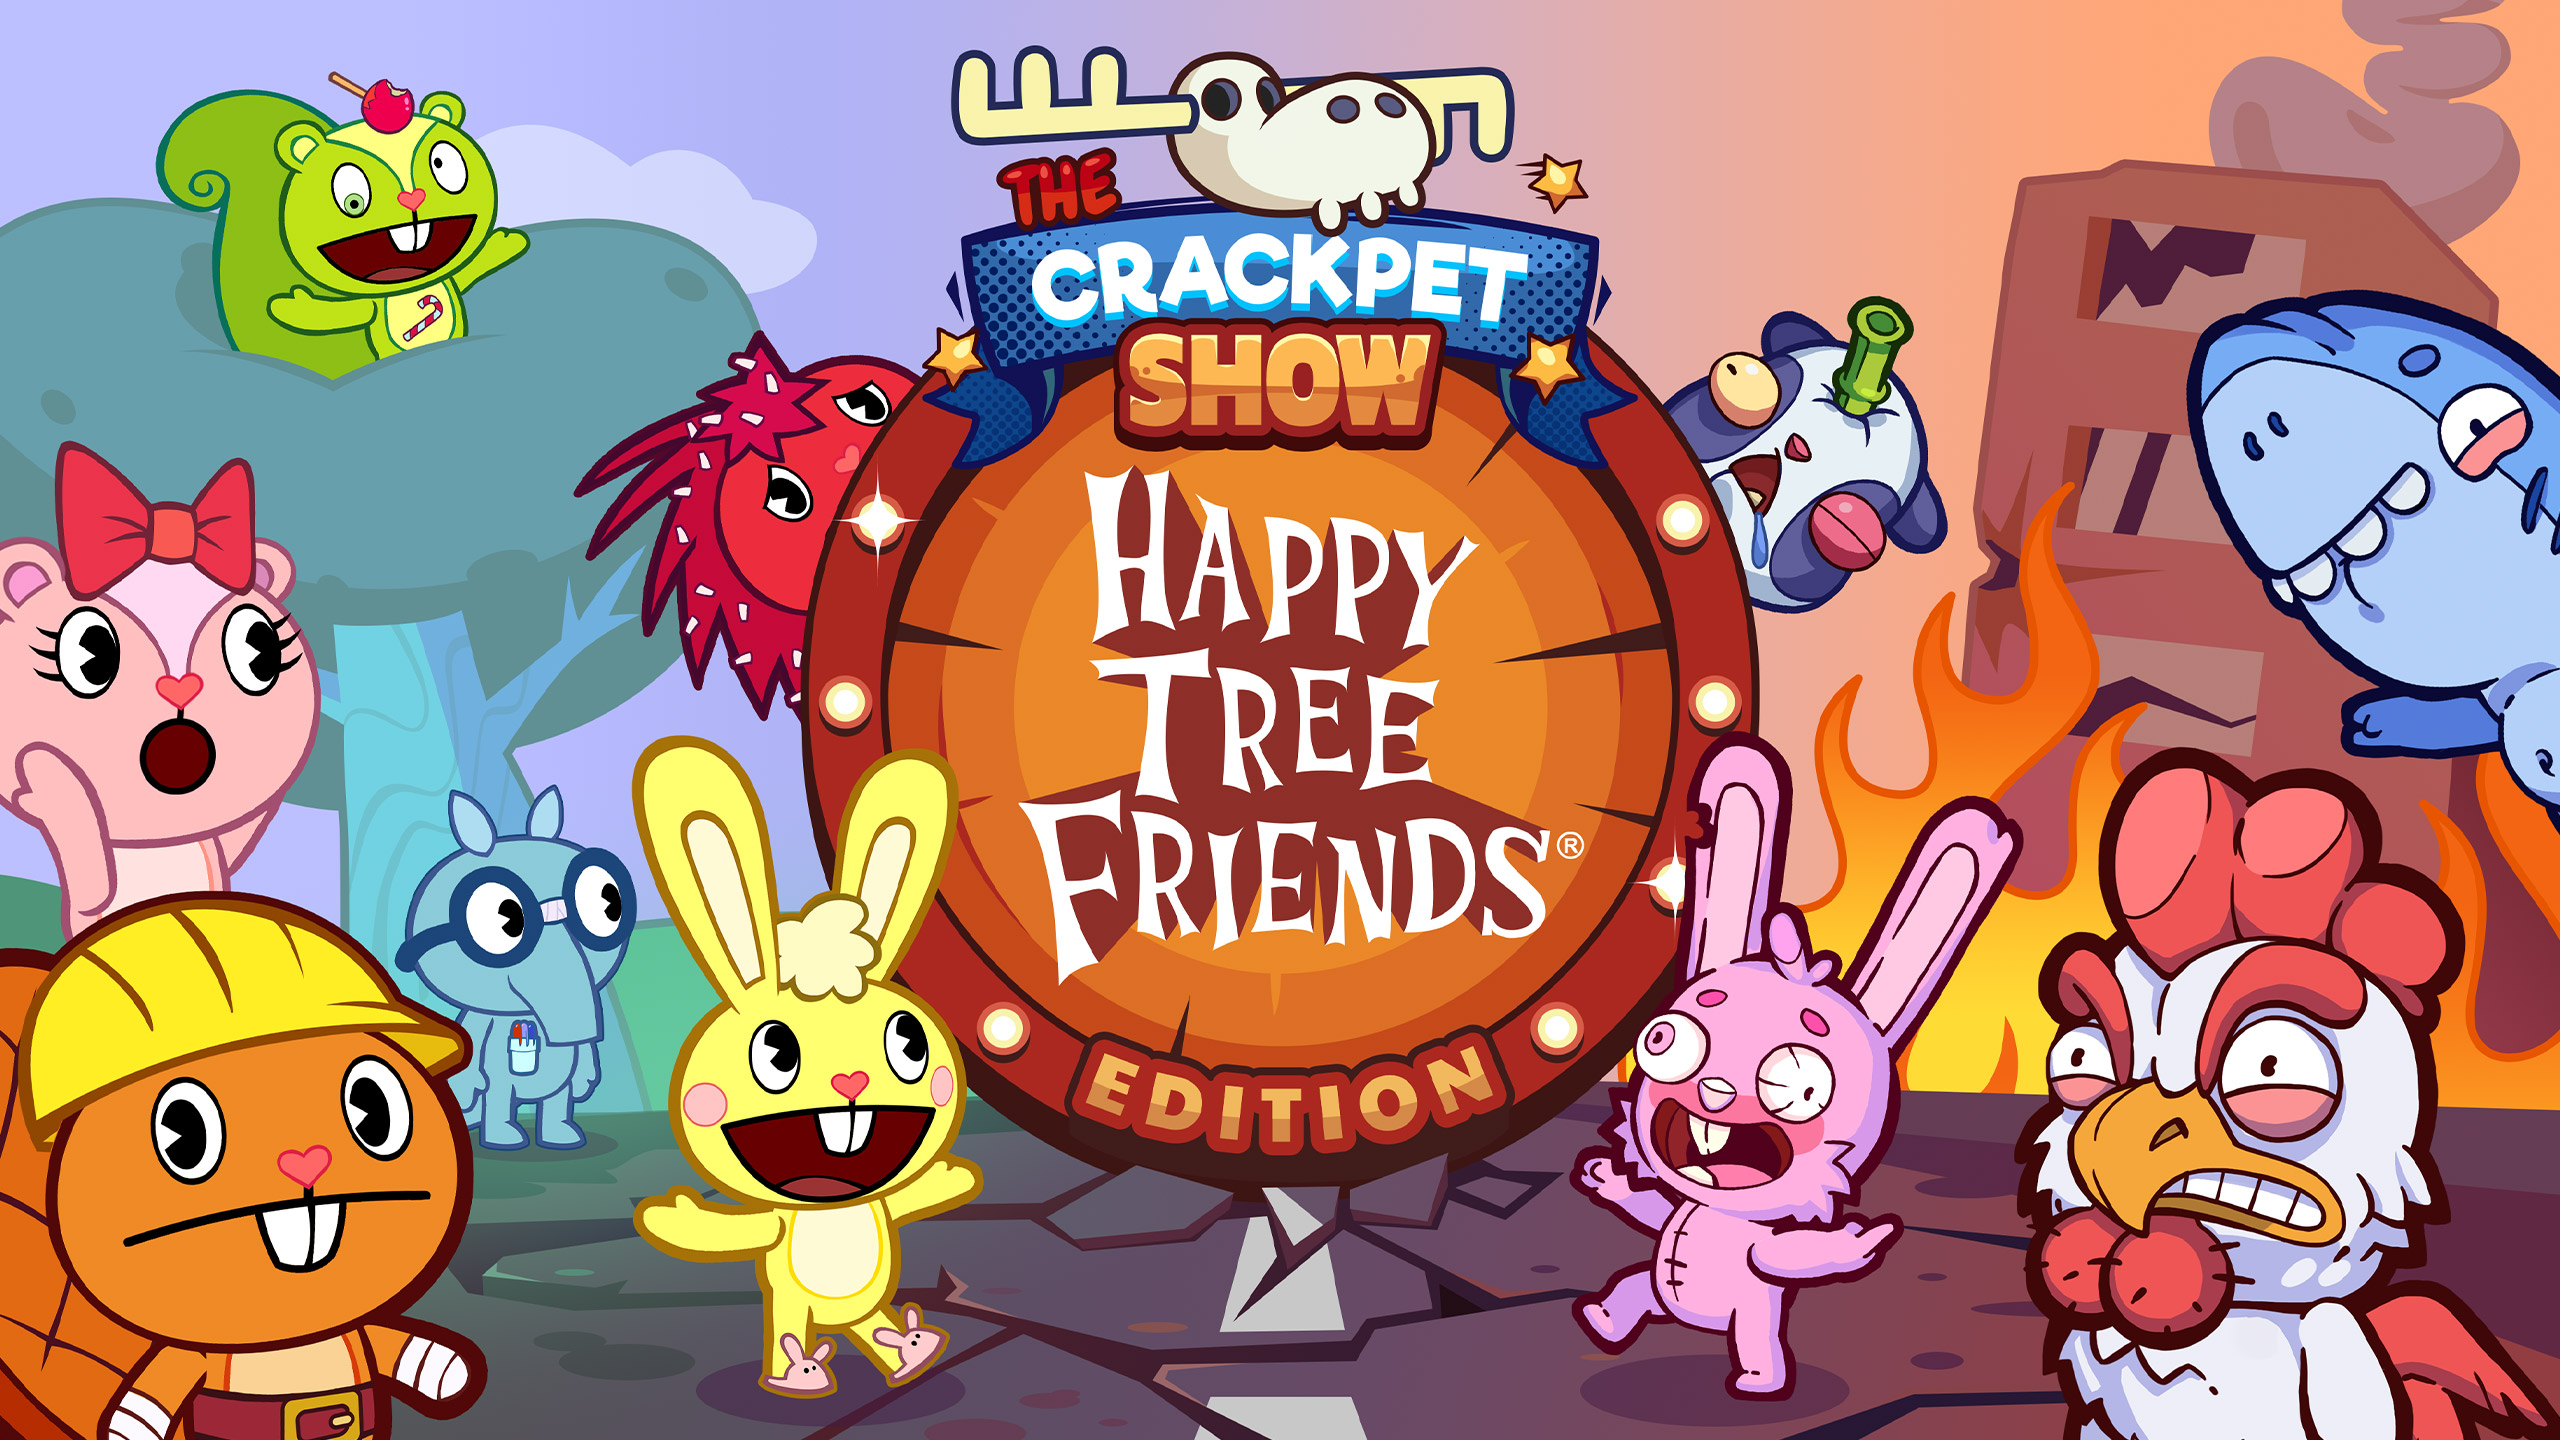 Happy Tree Friends совершили настоящий прорыв: дикая популярность в интернете, а потом сериал попал на ТВ, причем с новым материалом, но почти без изменений в анимации.